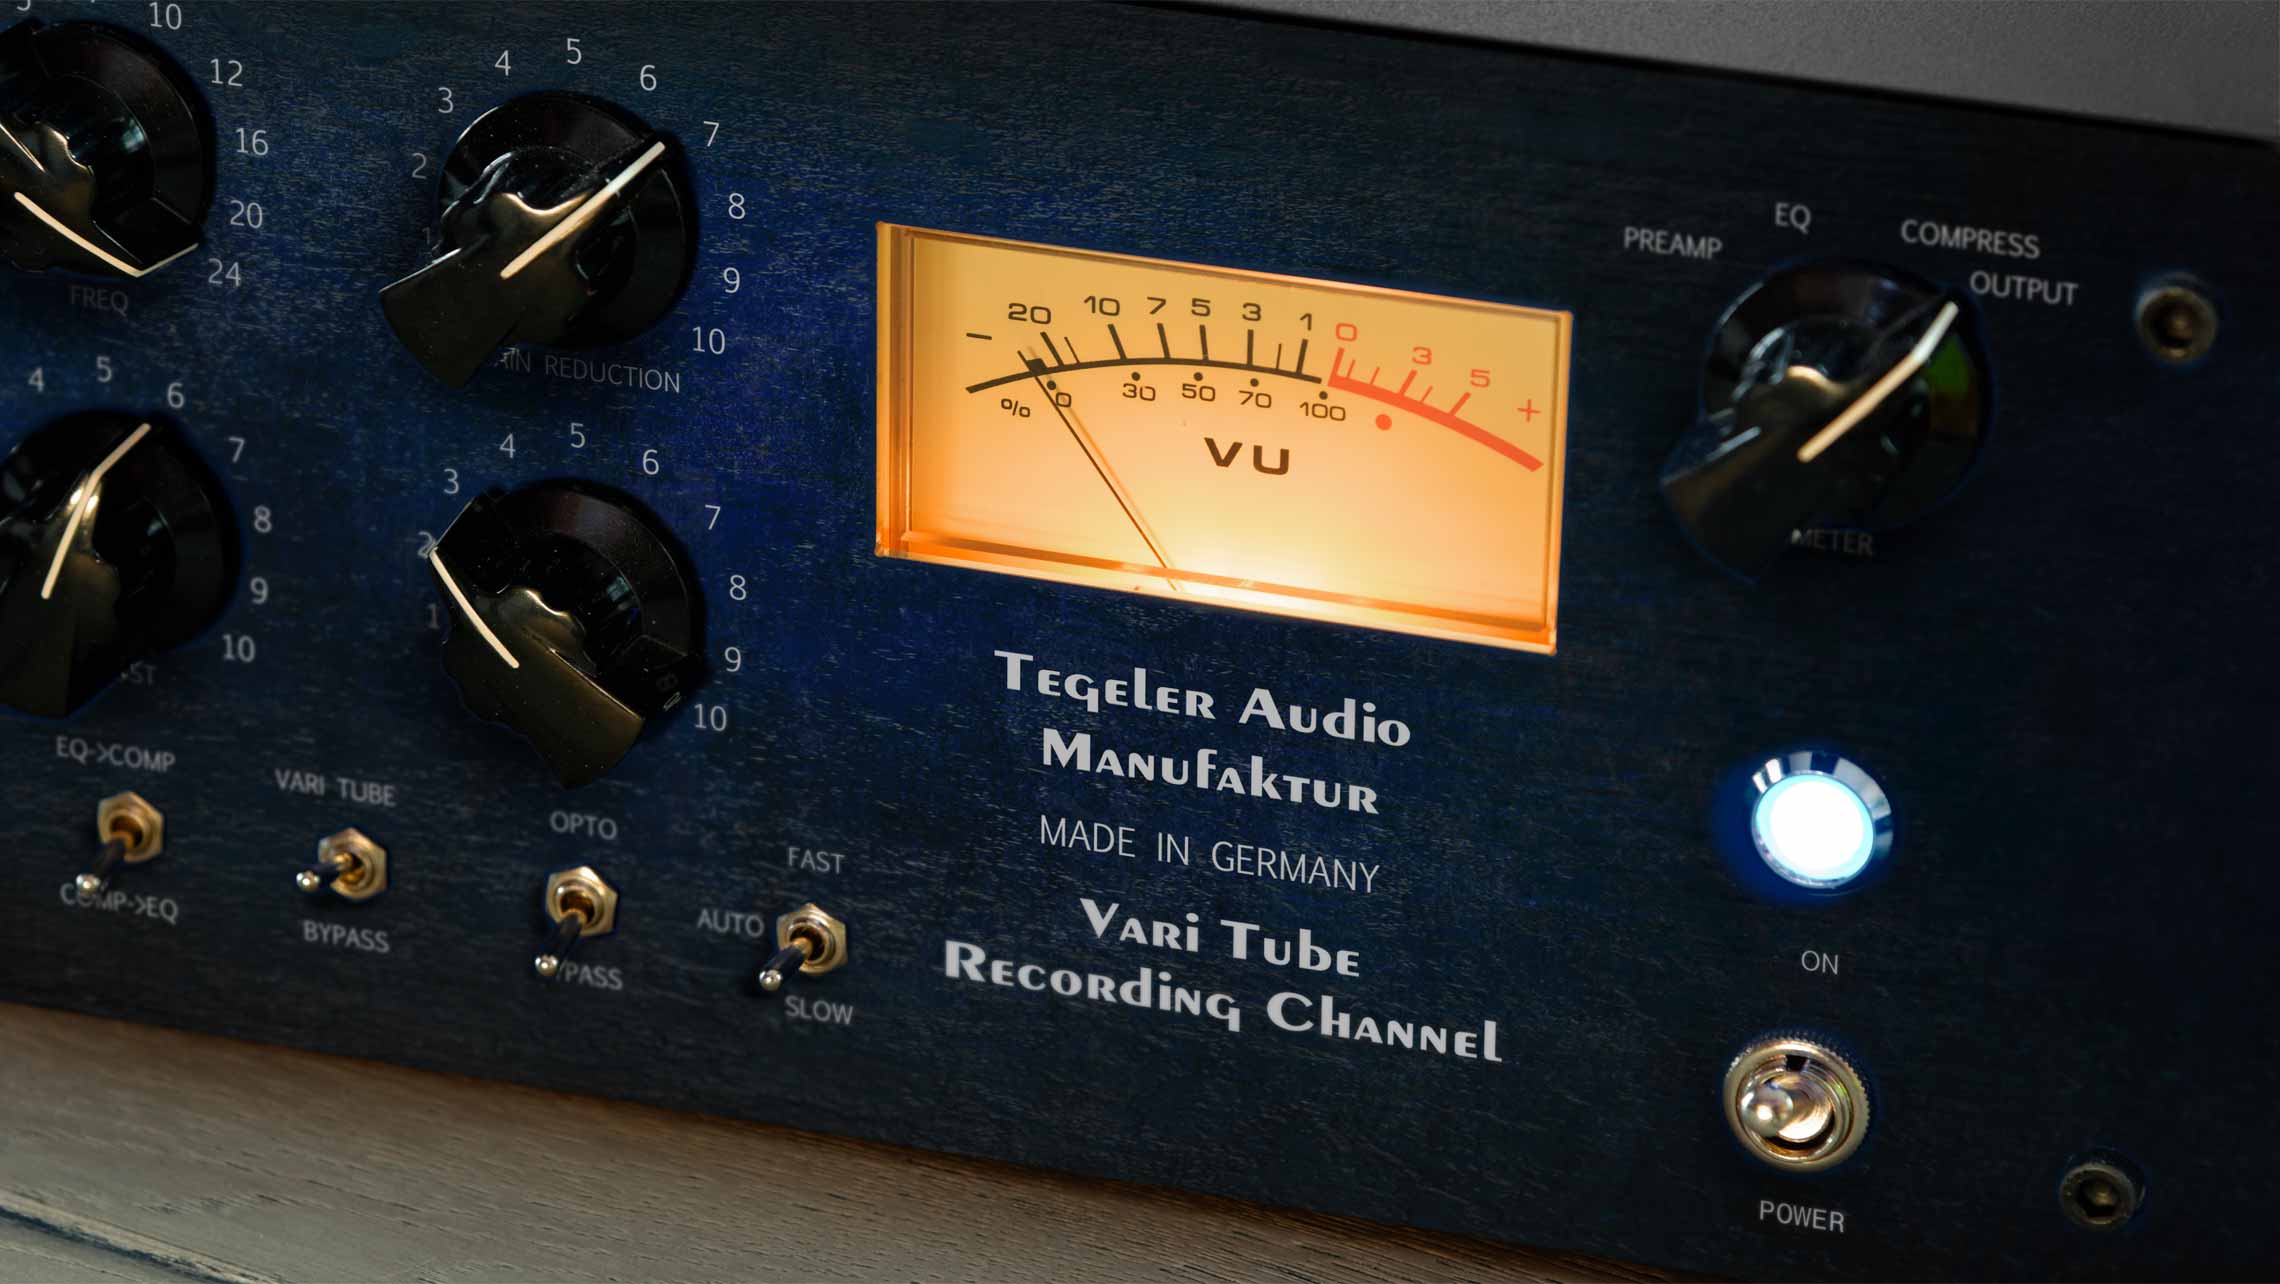 Tegeler Audio Manufaktur Vtrc Recording Channel - Preamplificador - Variation 1